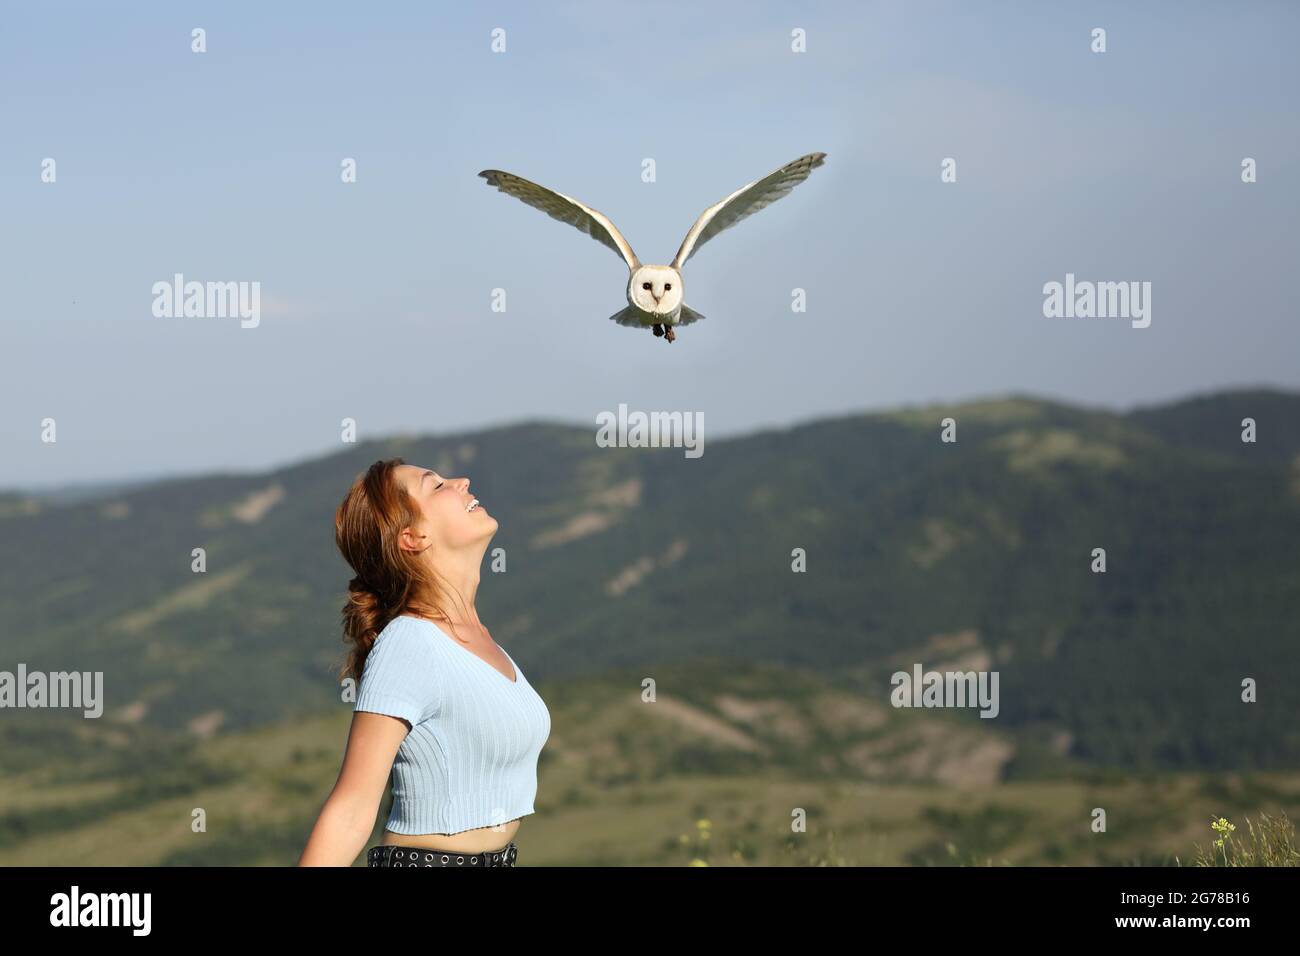 Profil d'une femme heureuse respirant de l'air frais dans la nature et un hibou volant au-dessus Banque D'Images